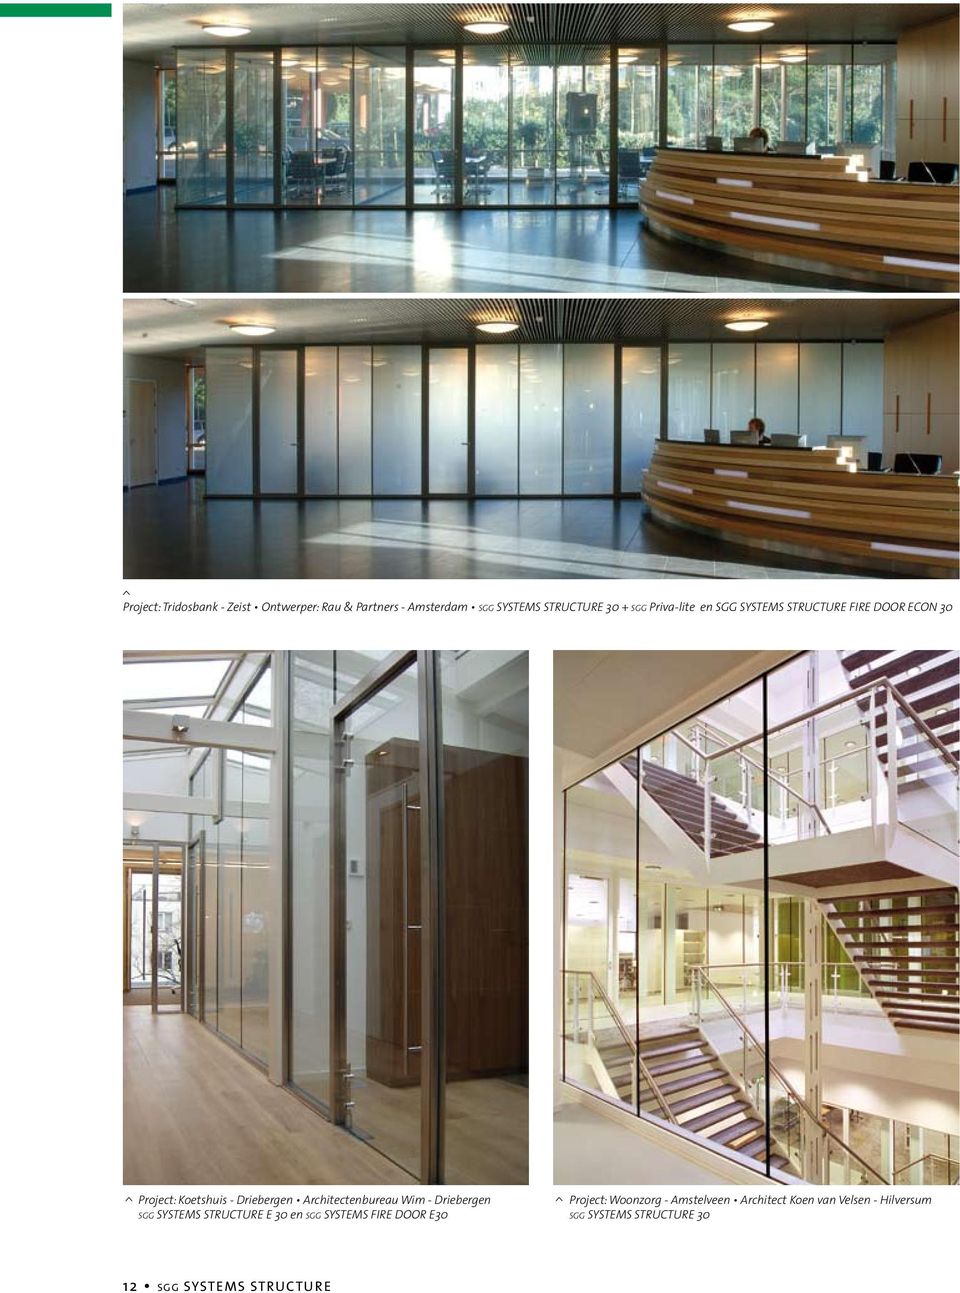 Architectenbureau Wim - Driebergen E 30 en SGG SYSTEMS FIRE DOOR E30 >